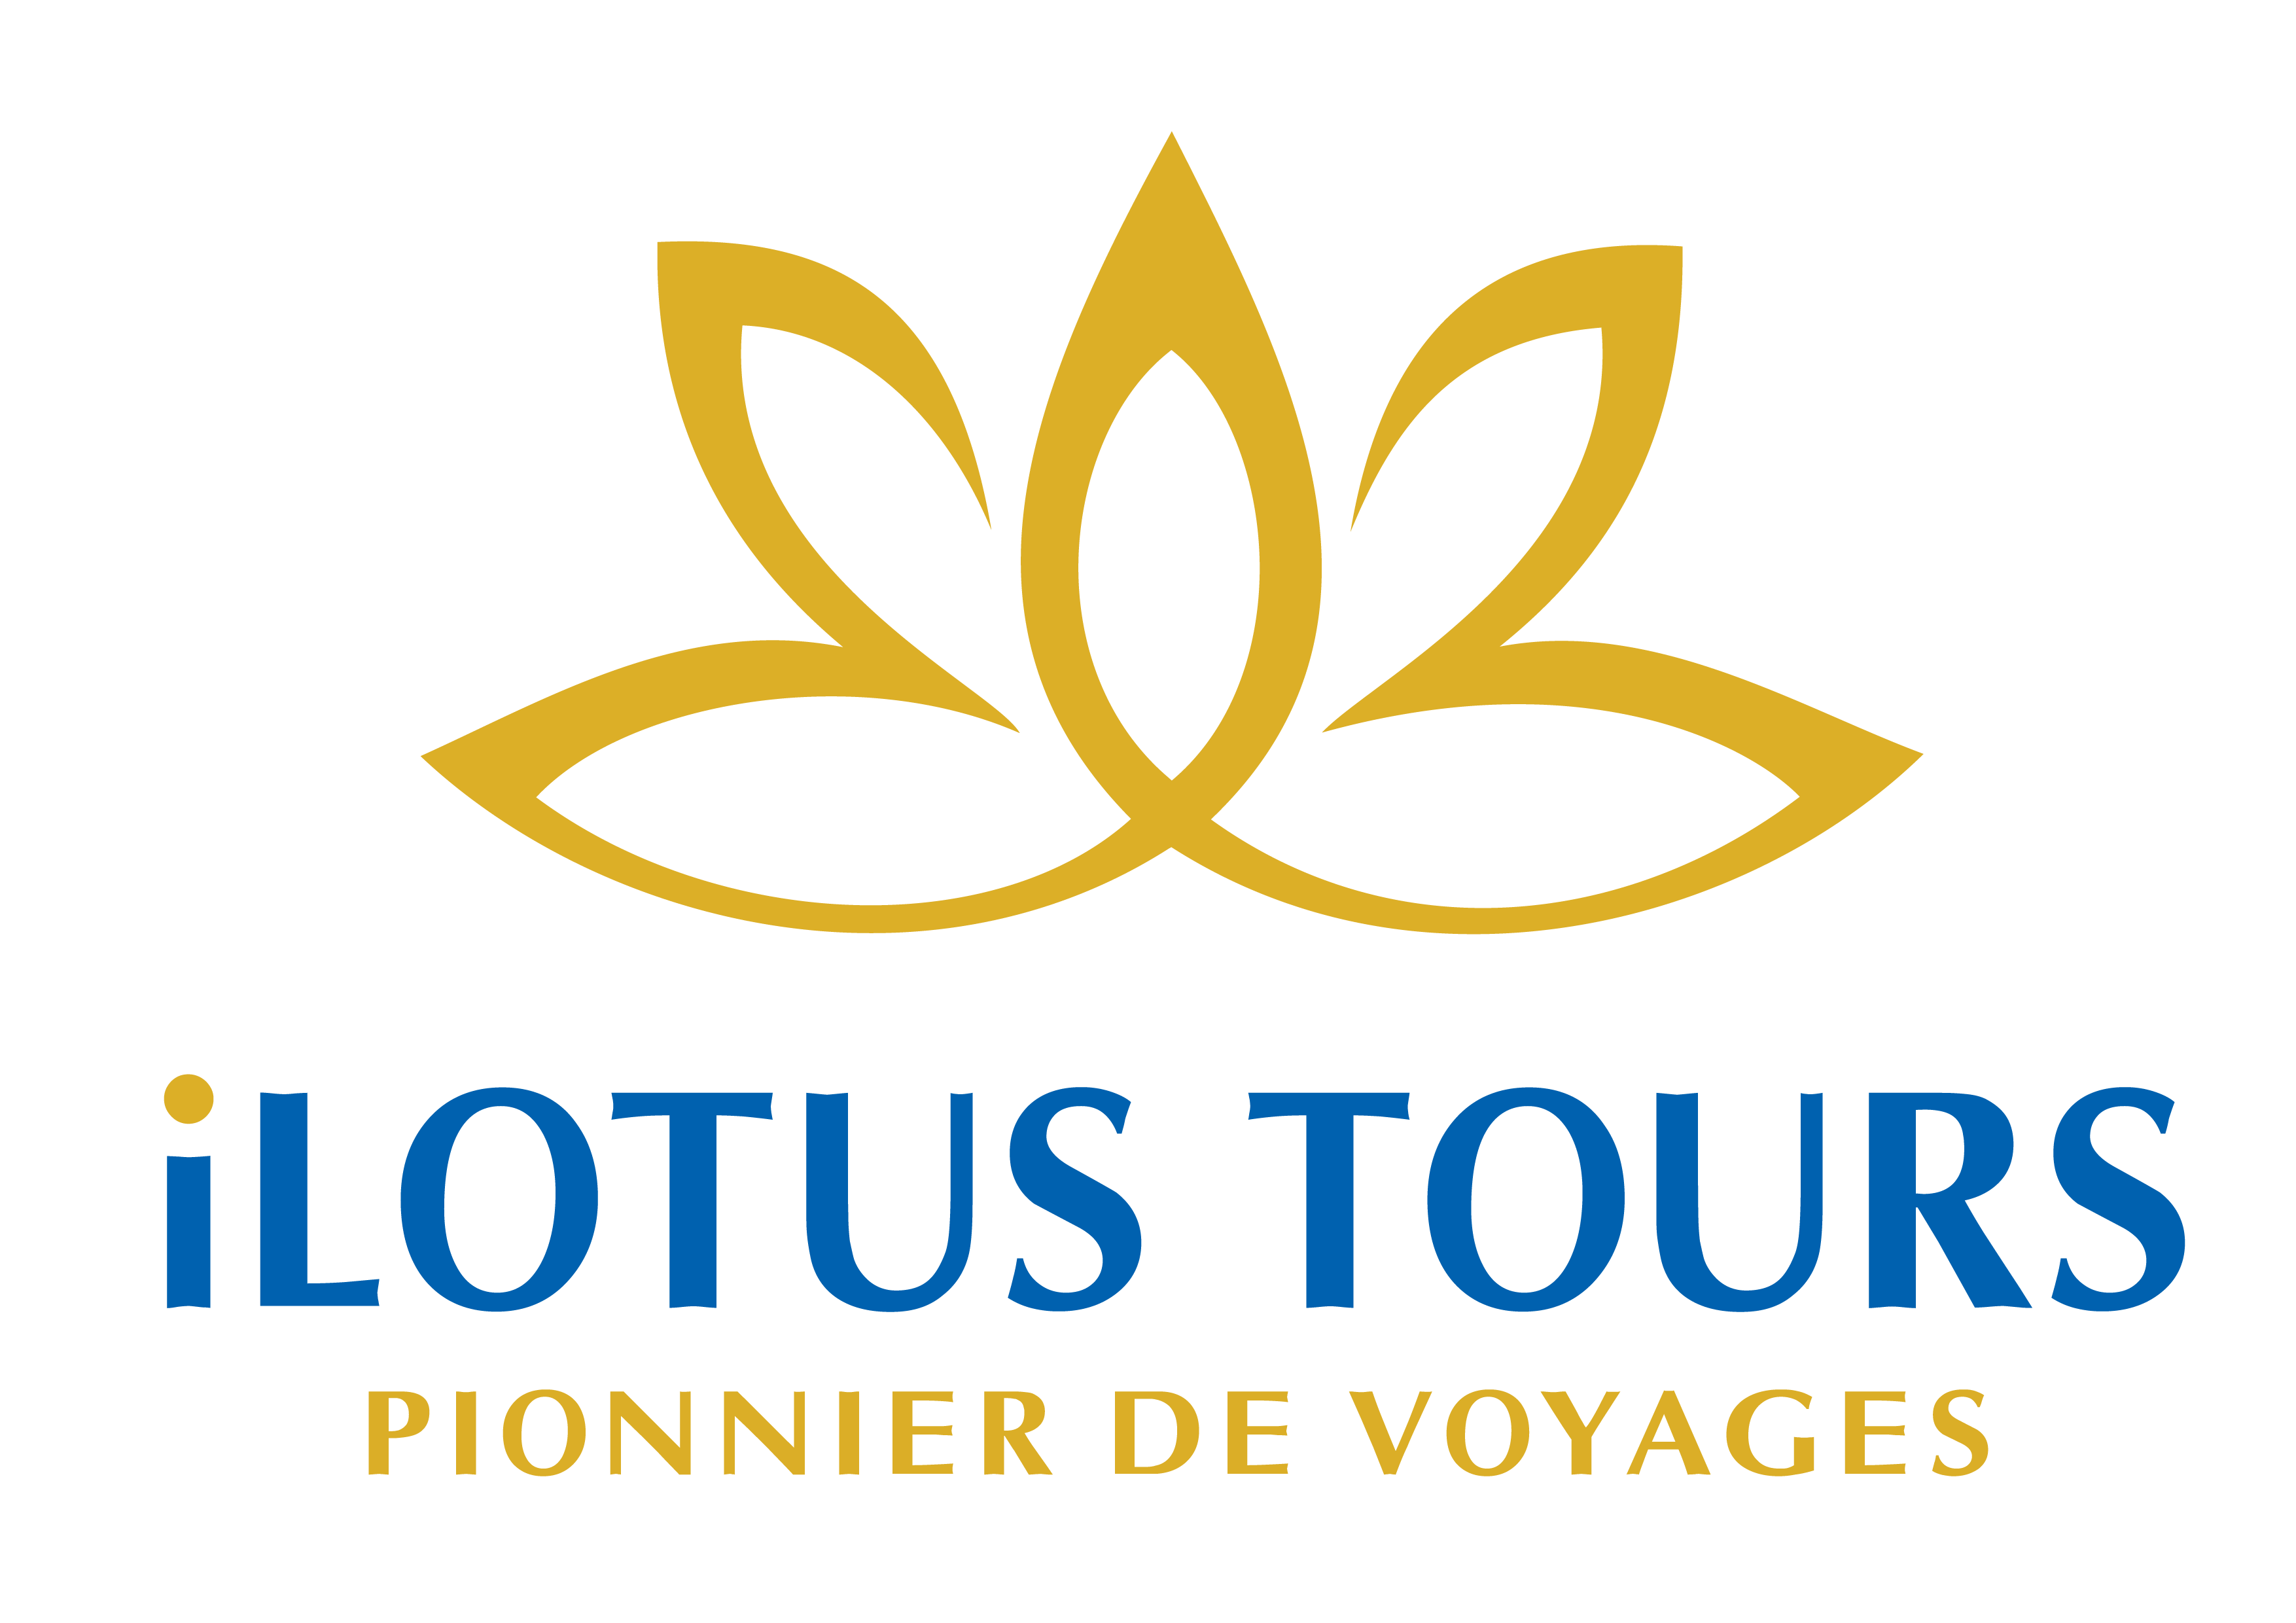 ILOTUS TOURS